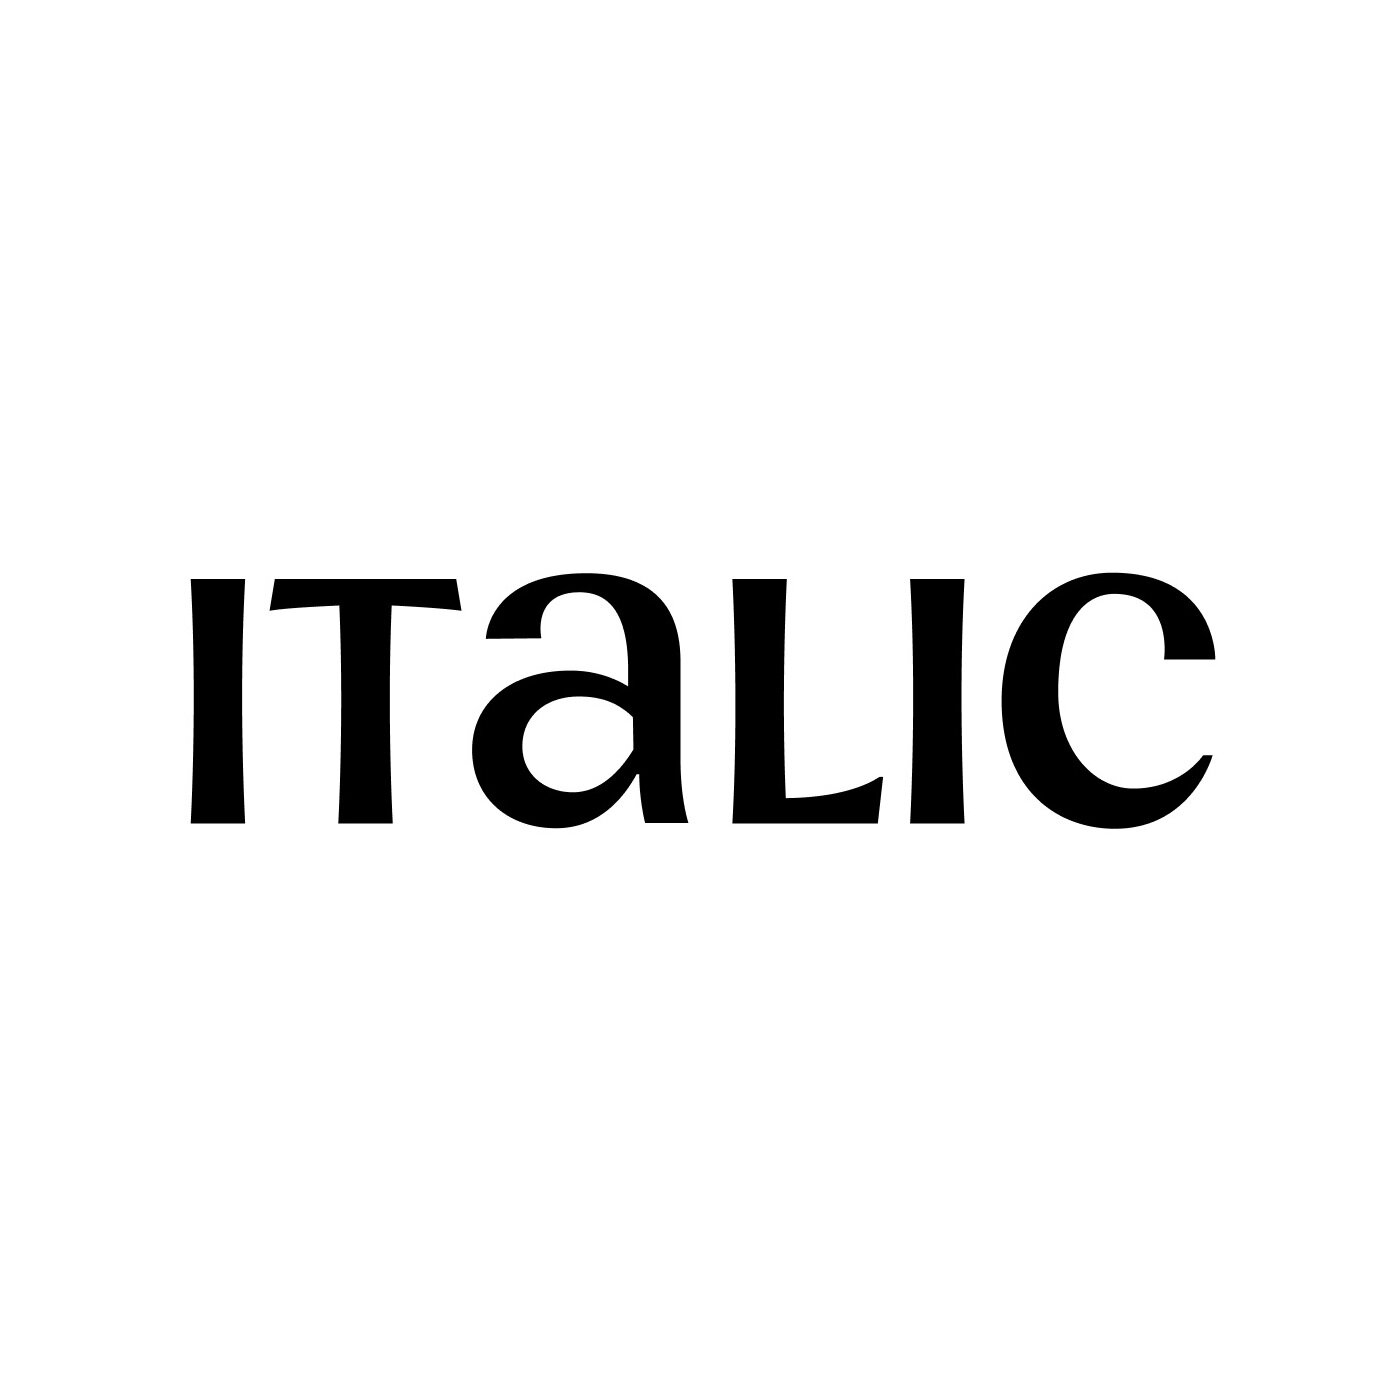 Italic logo 1400x1400.jpg